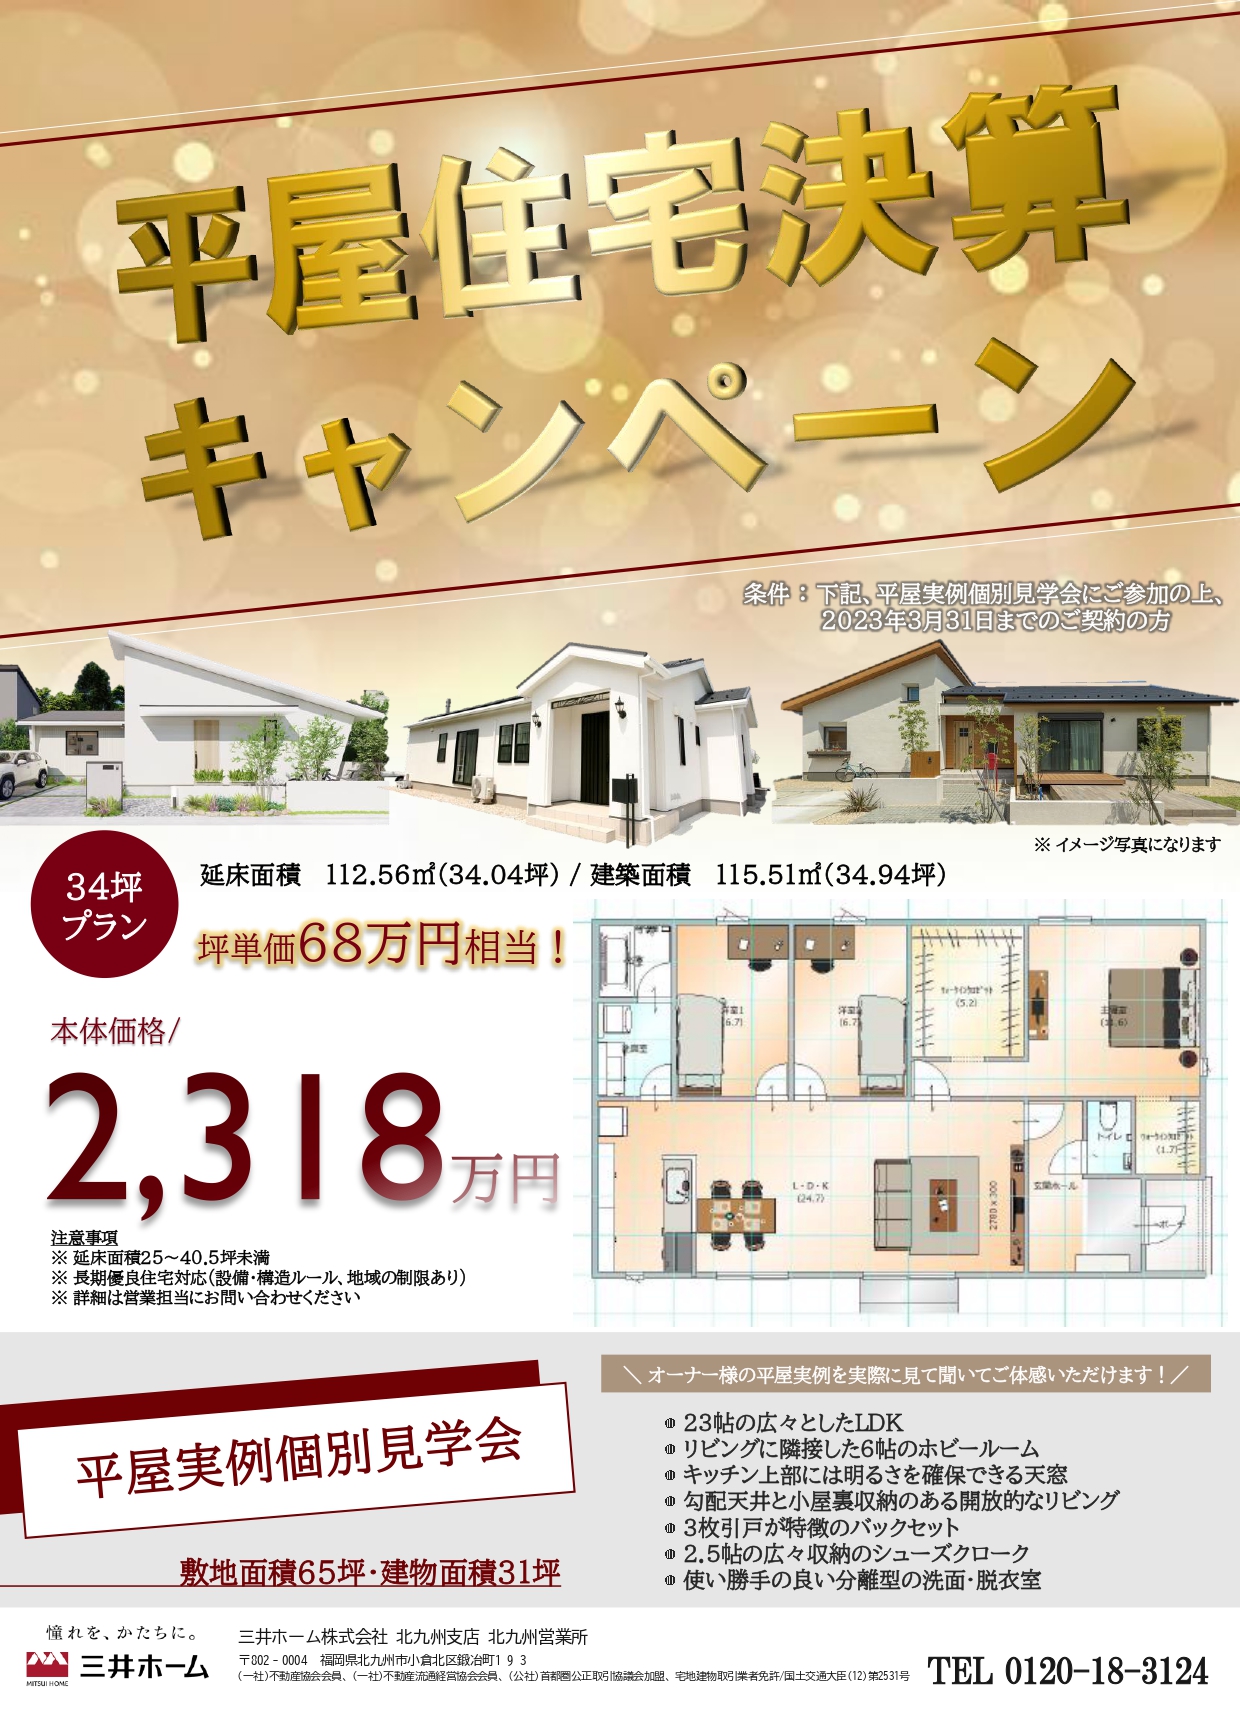 【三井ホーム】3月決算平屋住宅キャンペーン